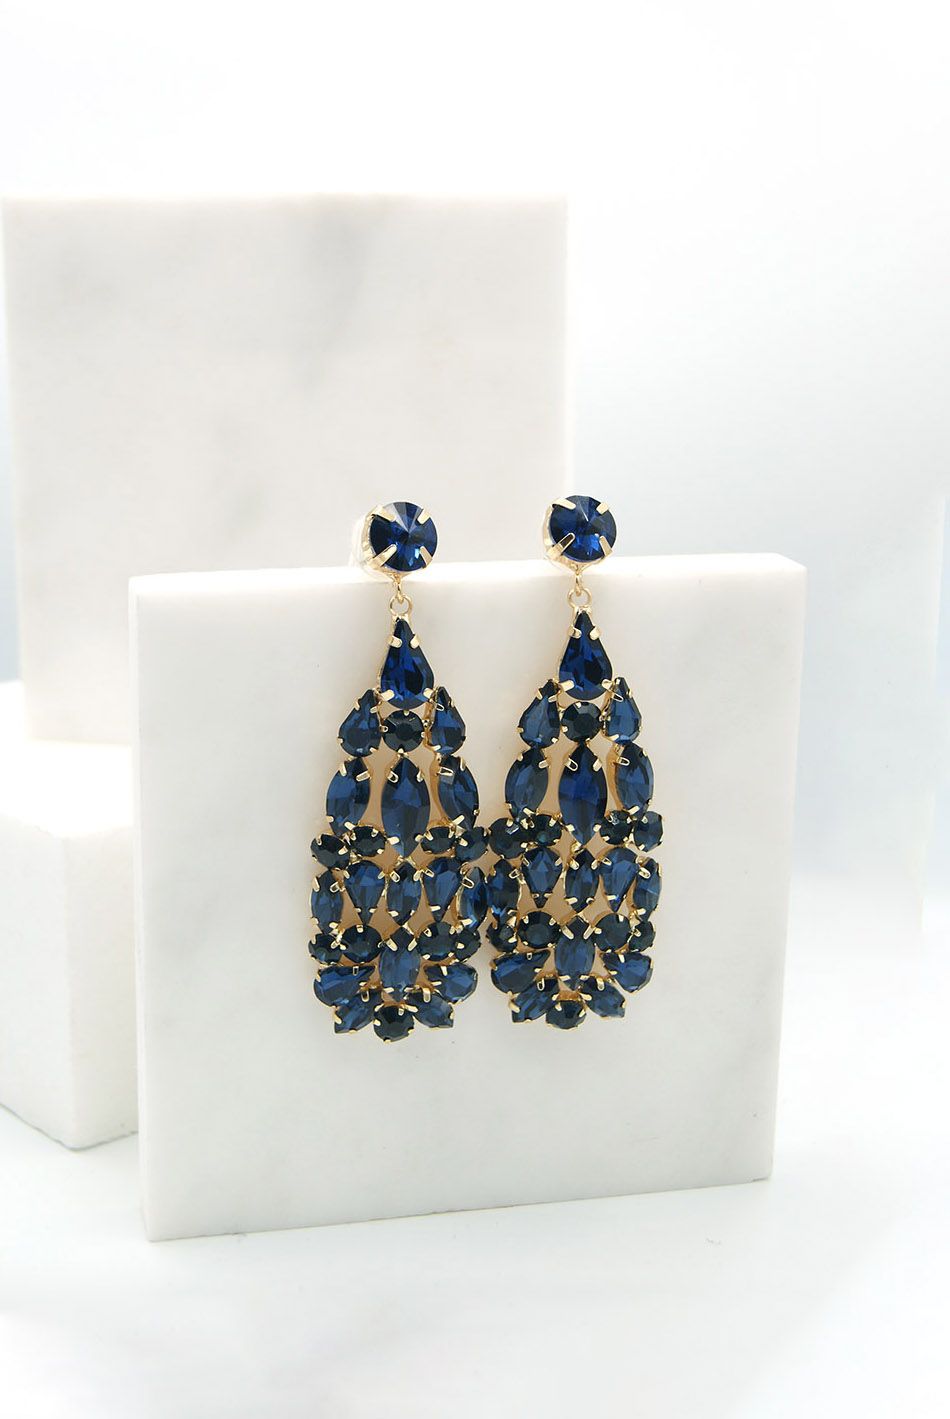 Κρεμαστά σκουλαρίκια σε χρυσή βάση με στρας και κρυστάλλους Μπλε / 126023-blue ΑΞΕΣΟΥΑΡ joya.gr